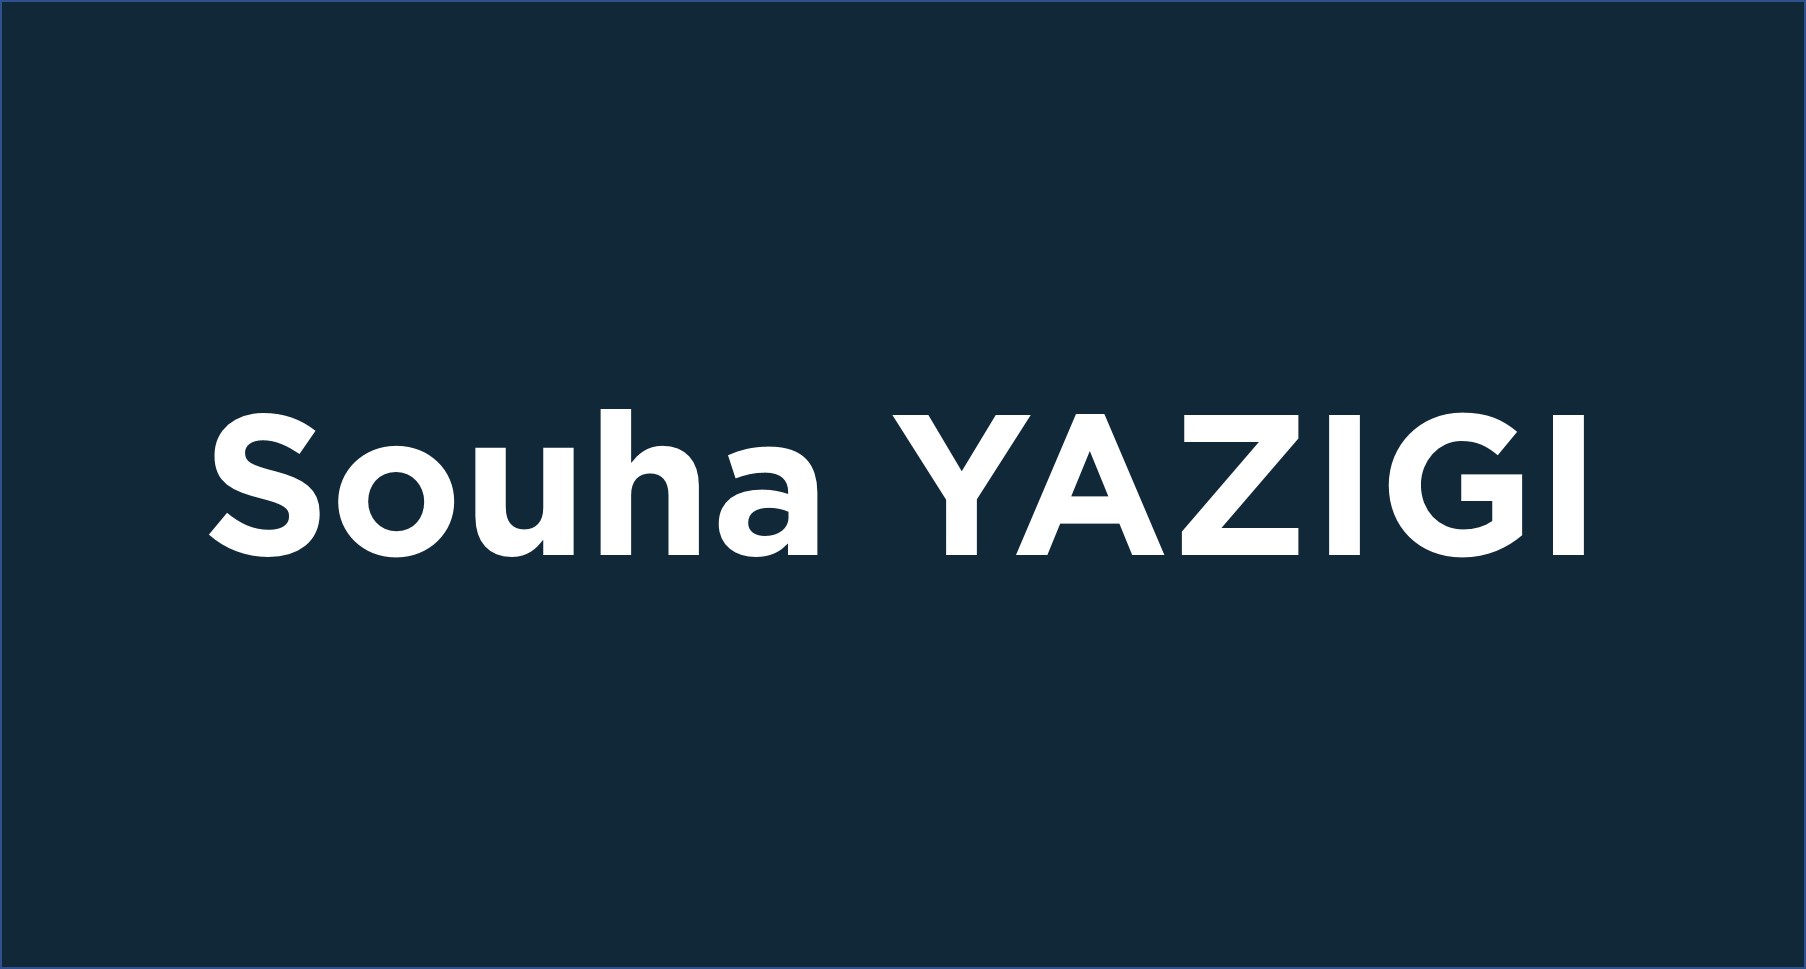 Souha Yazigi